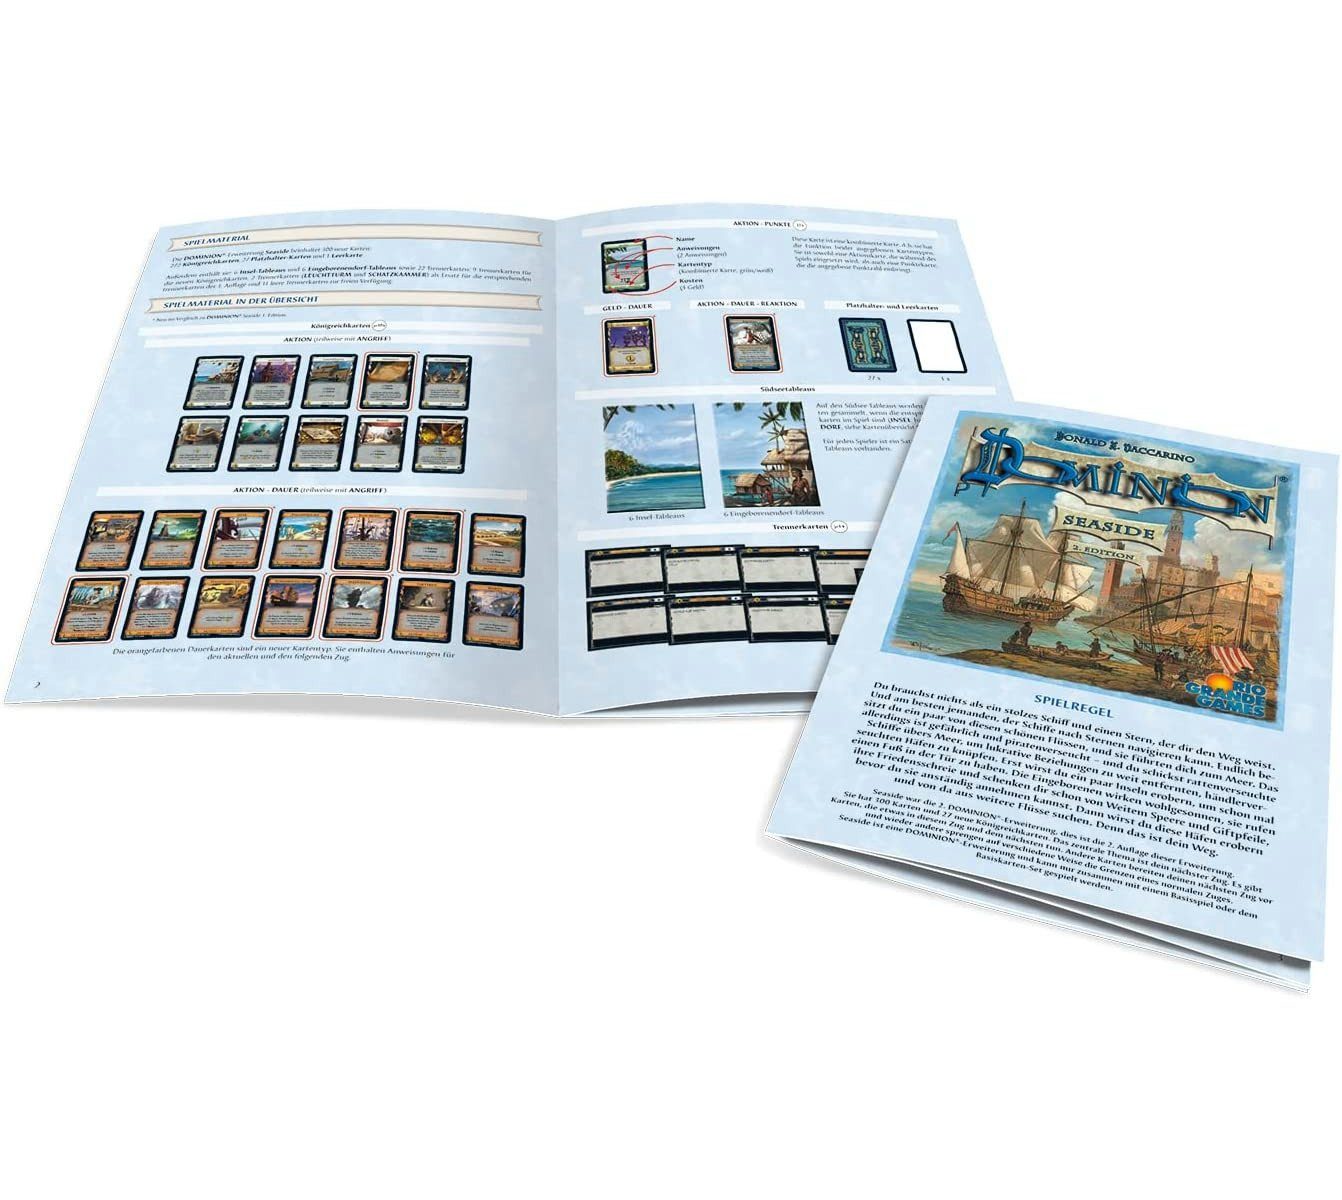 RGG Dominion Rio Grande - Spiel, Erweiterung (2. Pegasus Spiele Games - Edition) Seaside Brettspiel